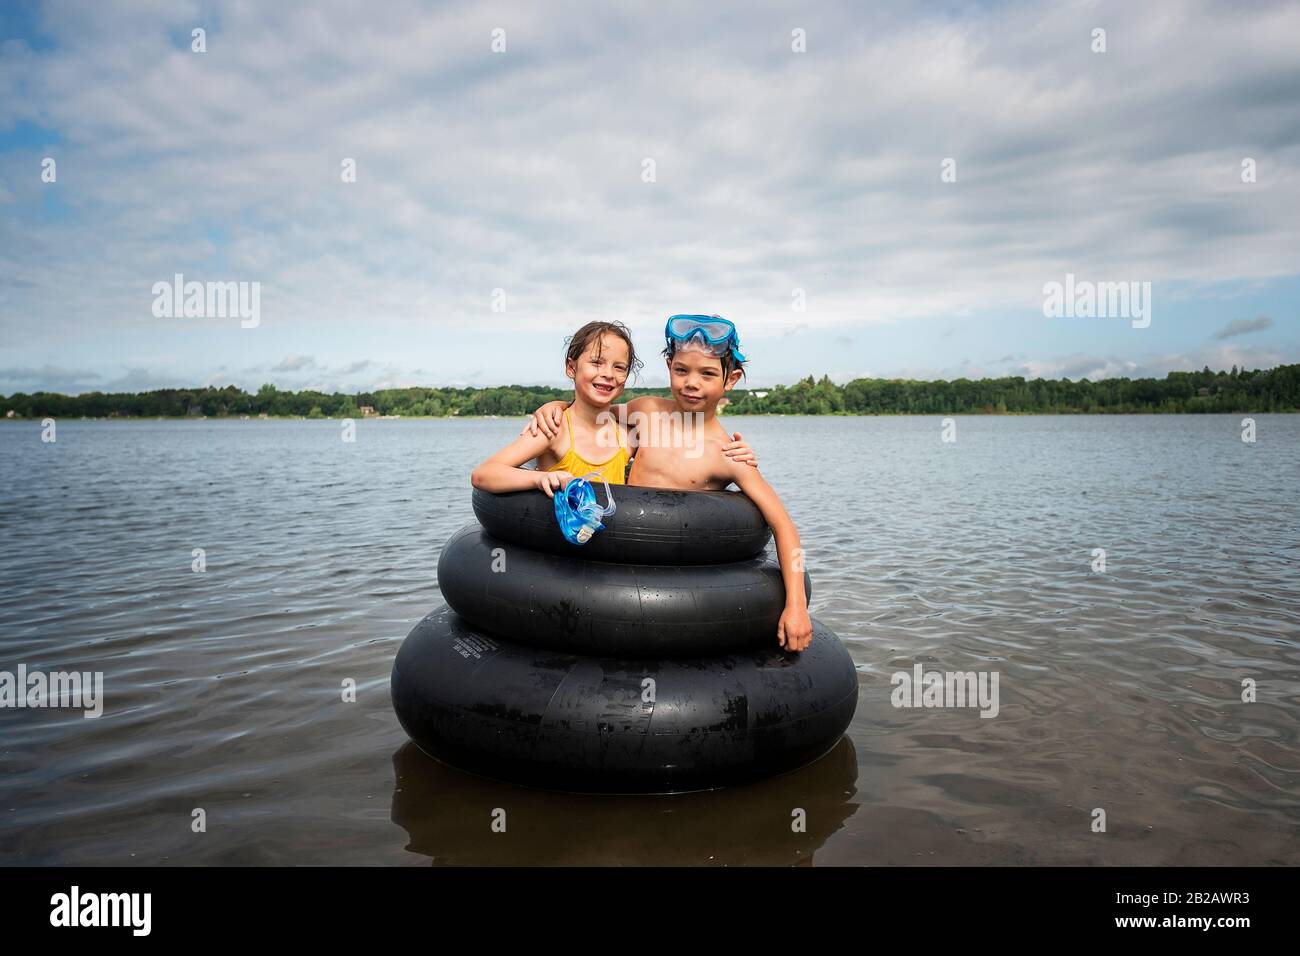 Mädchen und Junge, die in aufblasbaren Gummiringen in einem See, USA, stehen Stockfoto